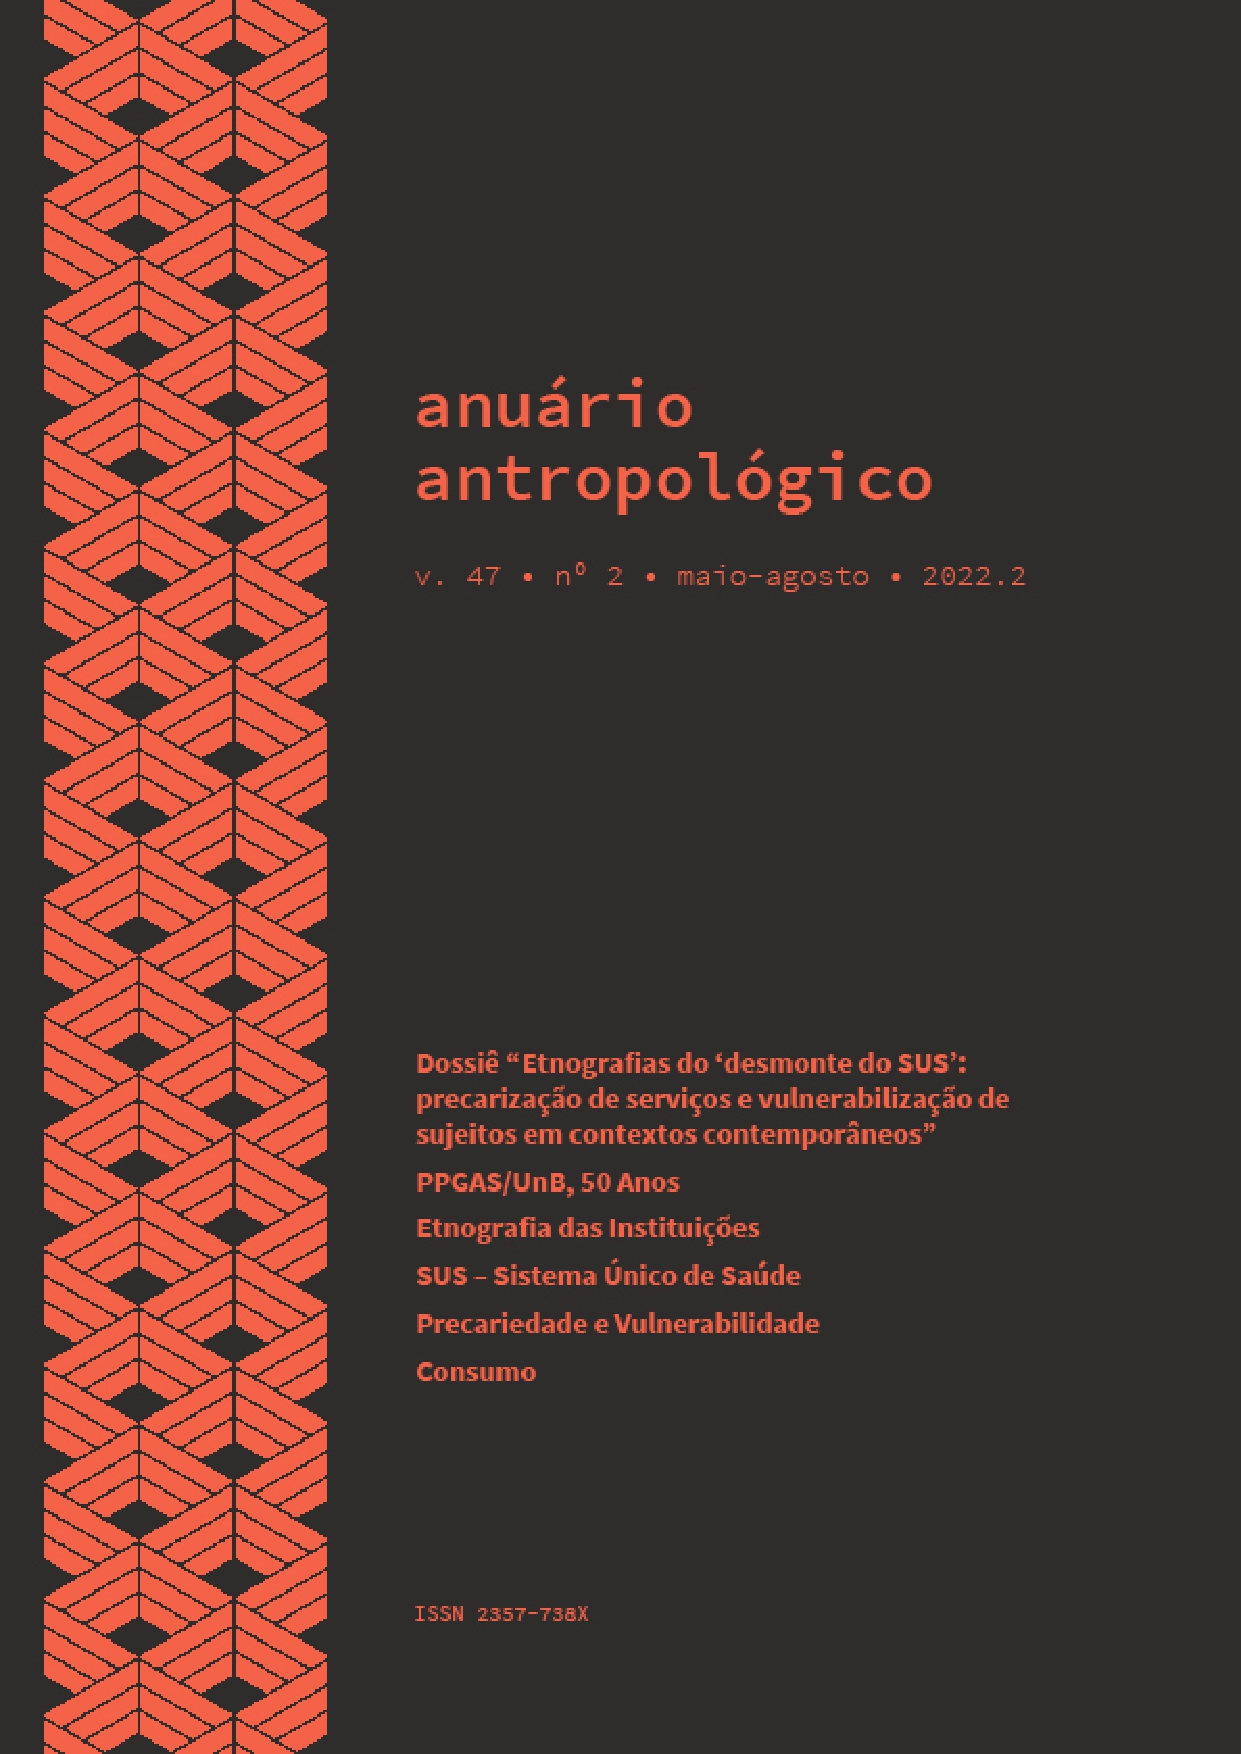 					Visualizar v. 47 n. 2 (2022): Anuário Antropológico
				